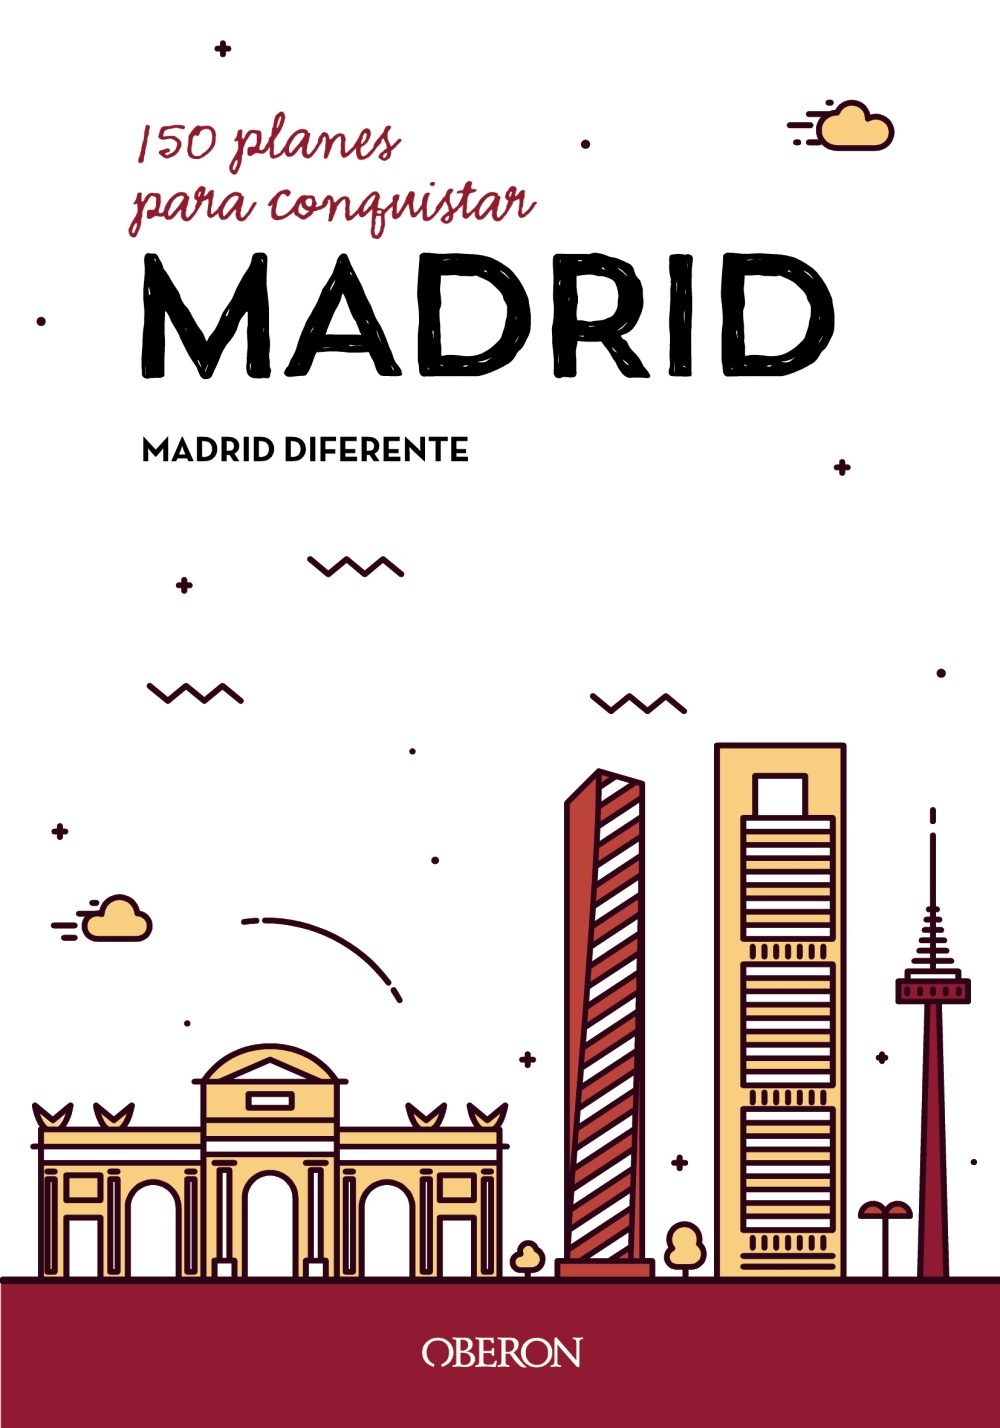 150 planes para conquistar Madrid -   